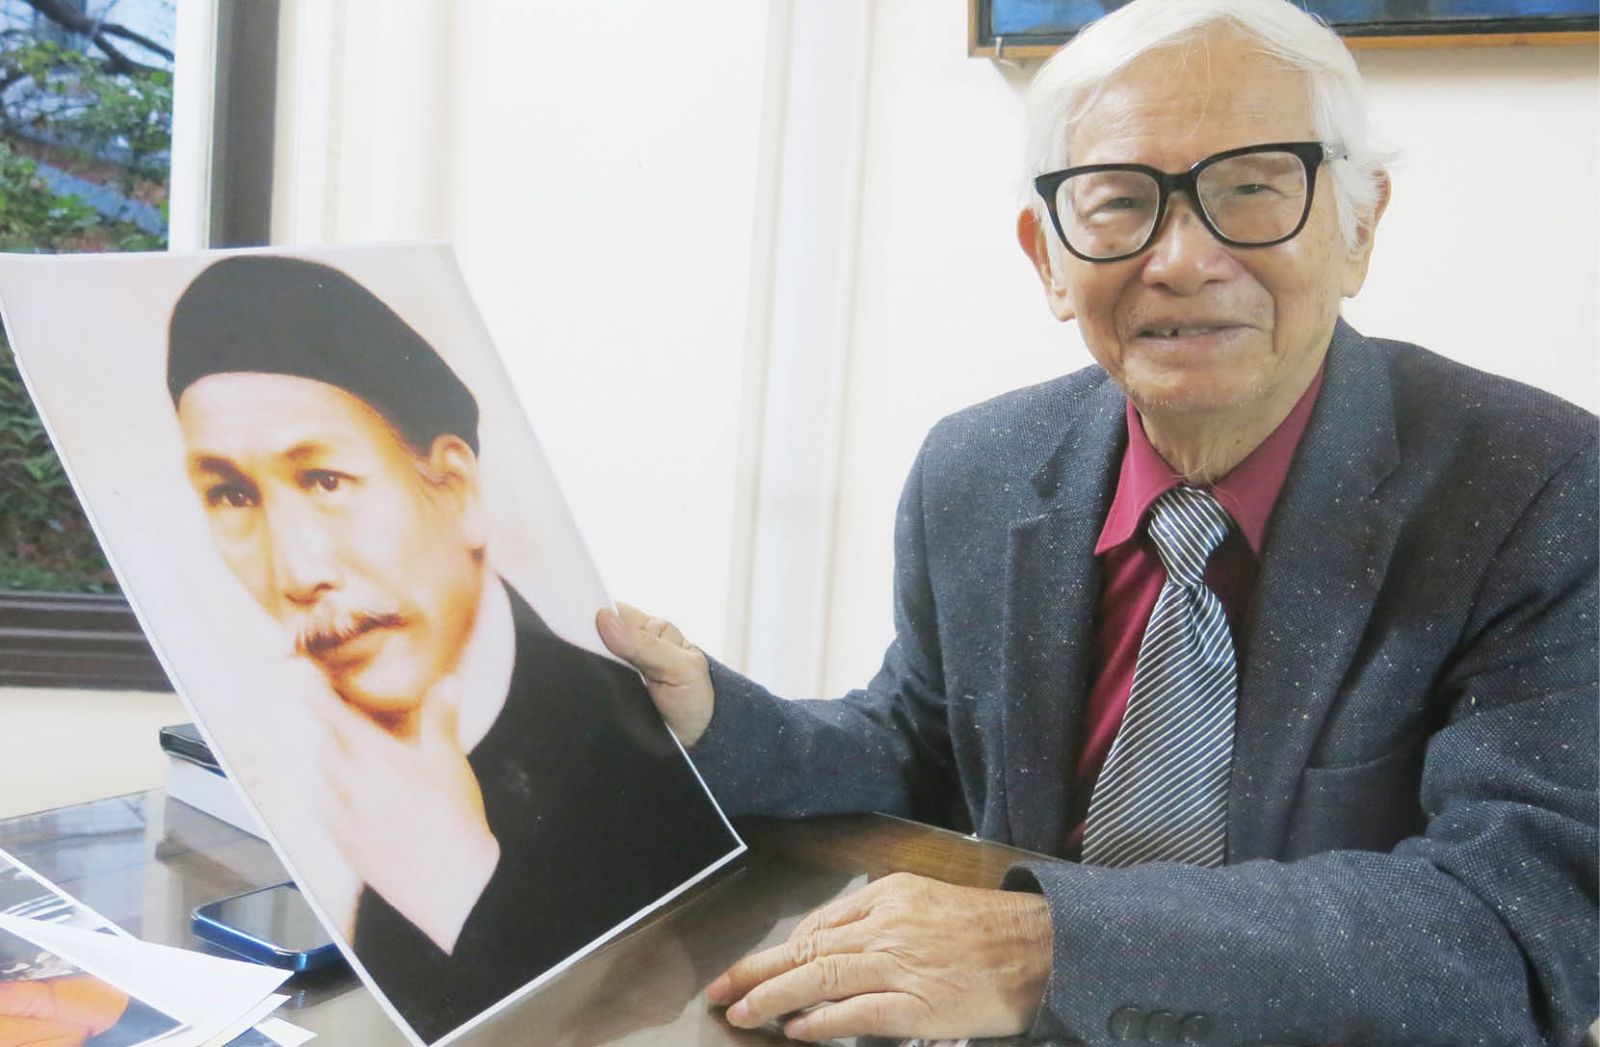 Nha nghien cuu Nguyen Dac Xuan min - Mong có người tiếp nối việc nghiên cứu về vua Hàm Nghi